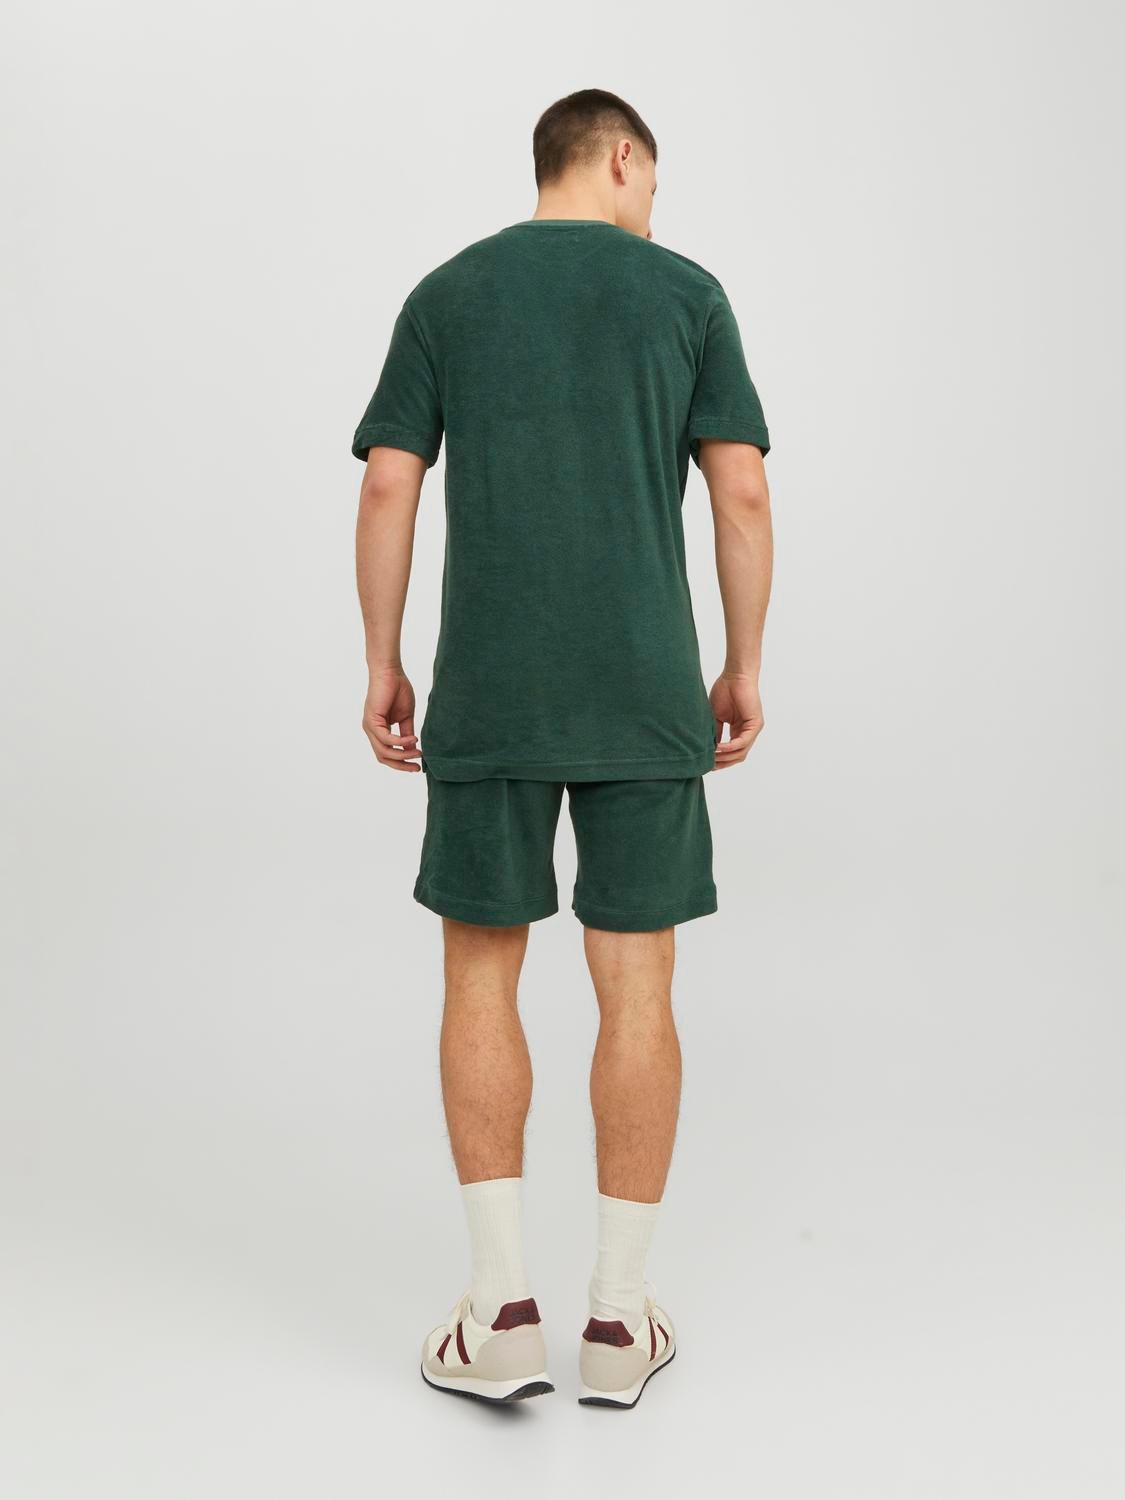 Jack & Jones Einfarbig Rundhals T-shirt -Trekking Green - 12237489